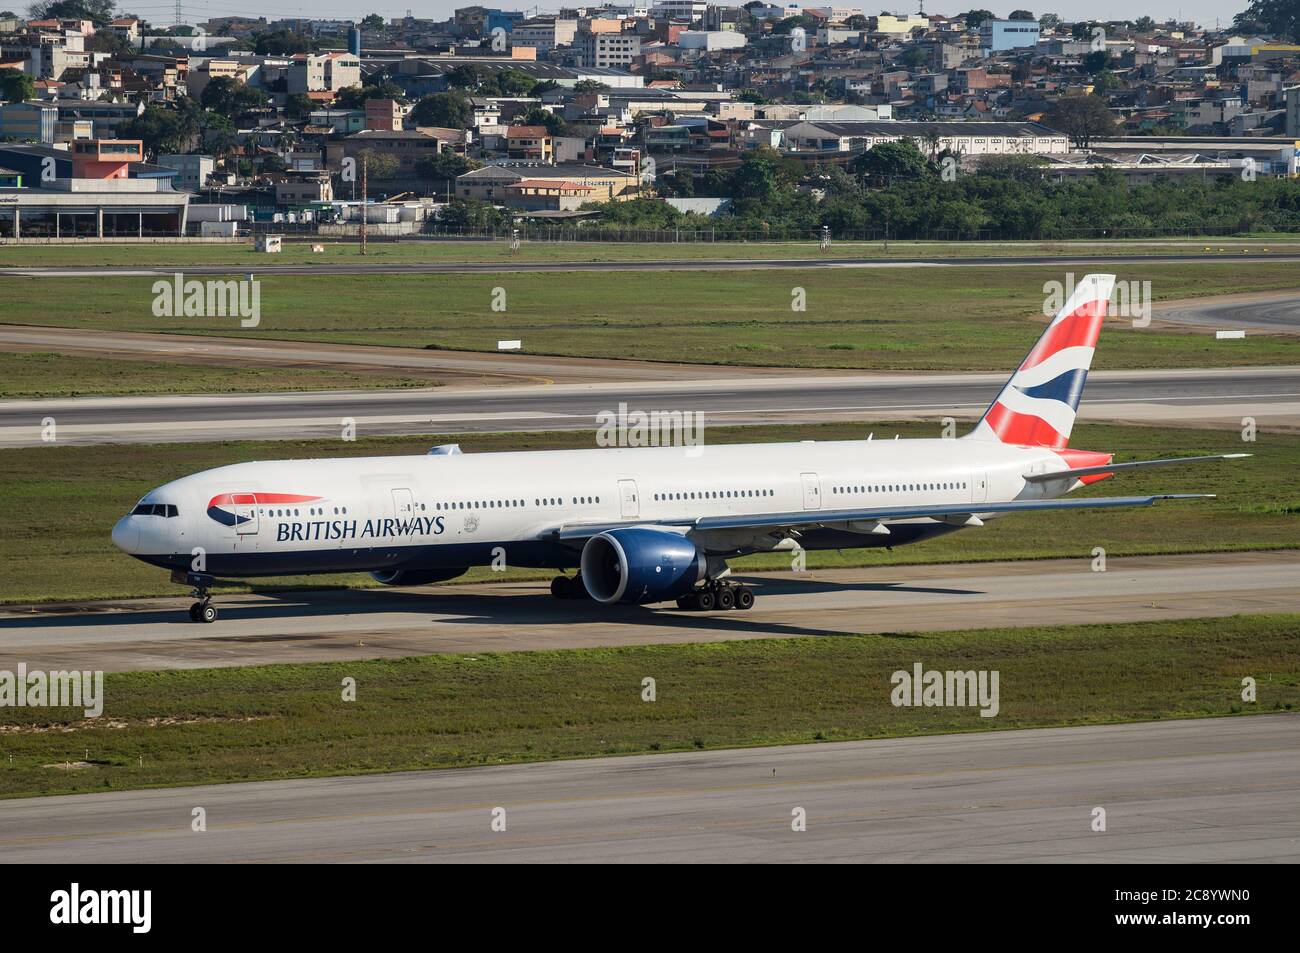 GUARULHOS, SAO PAULO - BRASILIEN / SEP 23, 2018: British Airways Boeing 777-336ER (Großraumflugzeug - Reg. G-STBI) besteuern der Landebahn 27R von Sao Pau Stockfoto